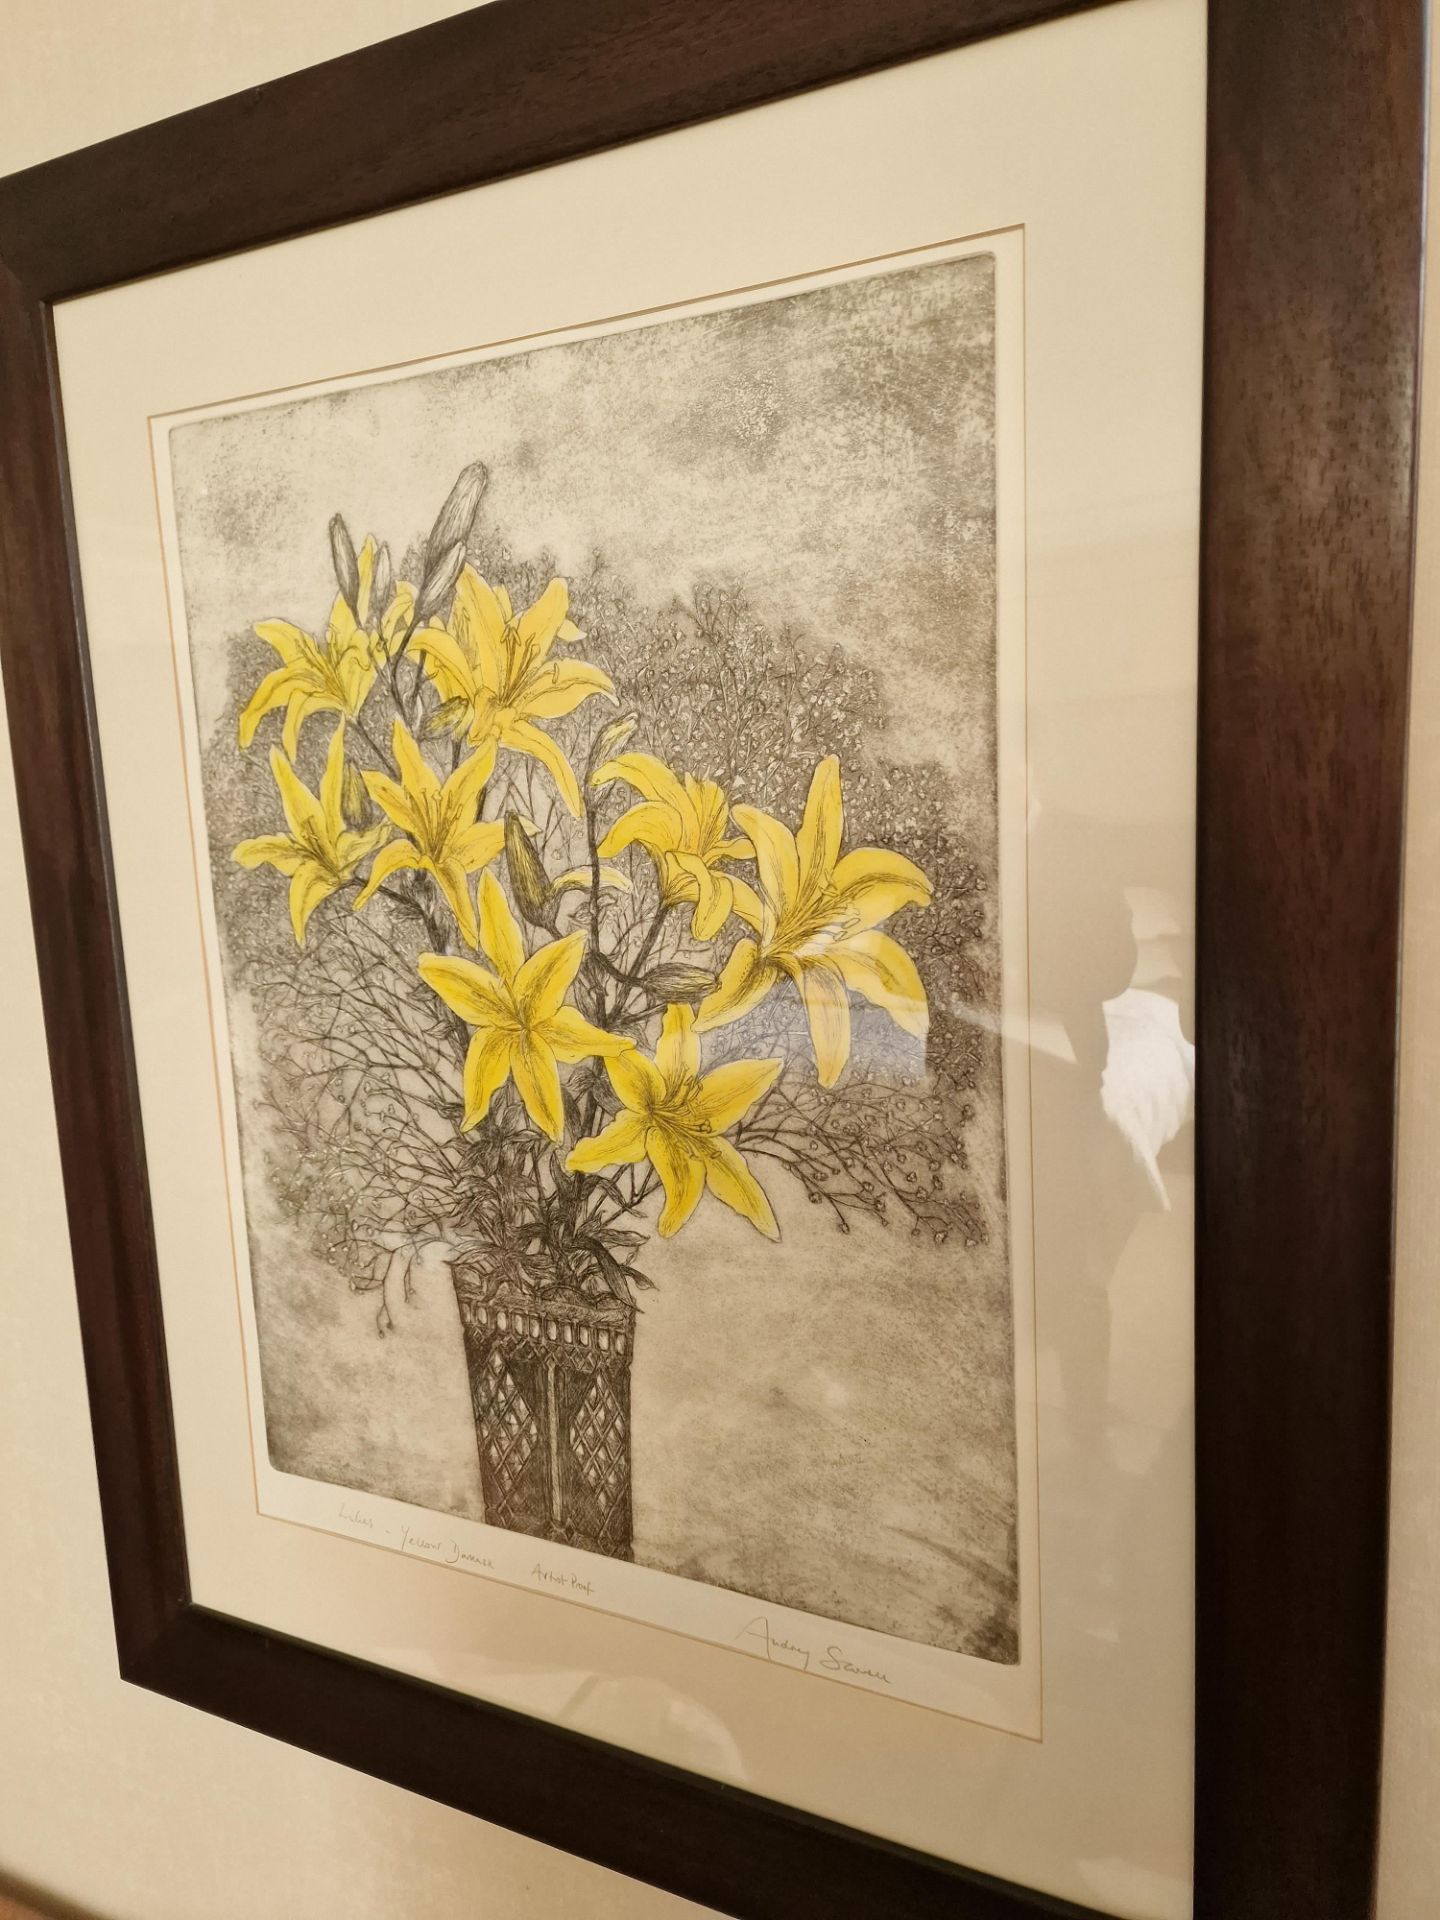 Audrey Scovell (British) framed art work titled Lillies Yellow Damask Artist Proof in walnut - Bild 2 aus 5